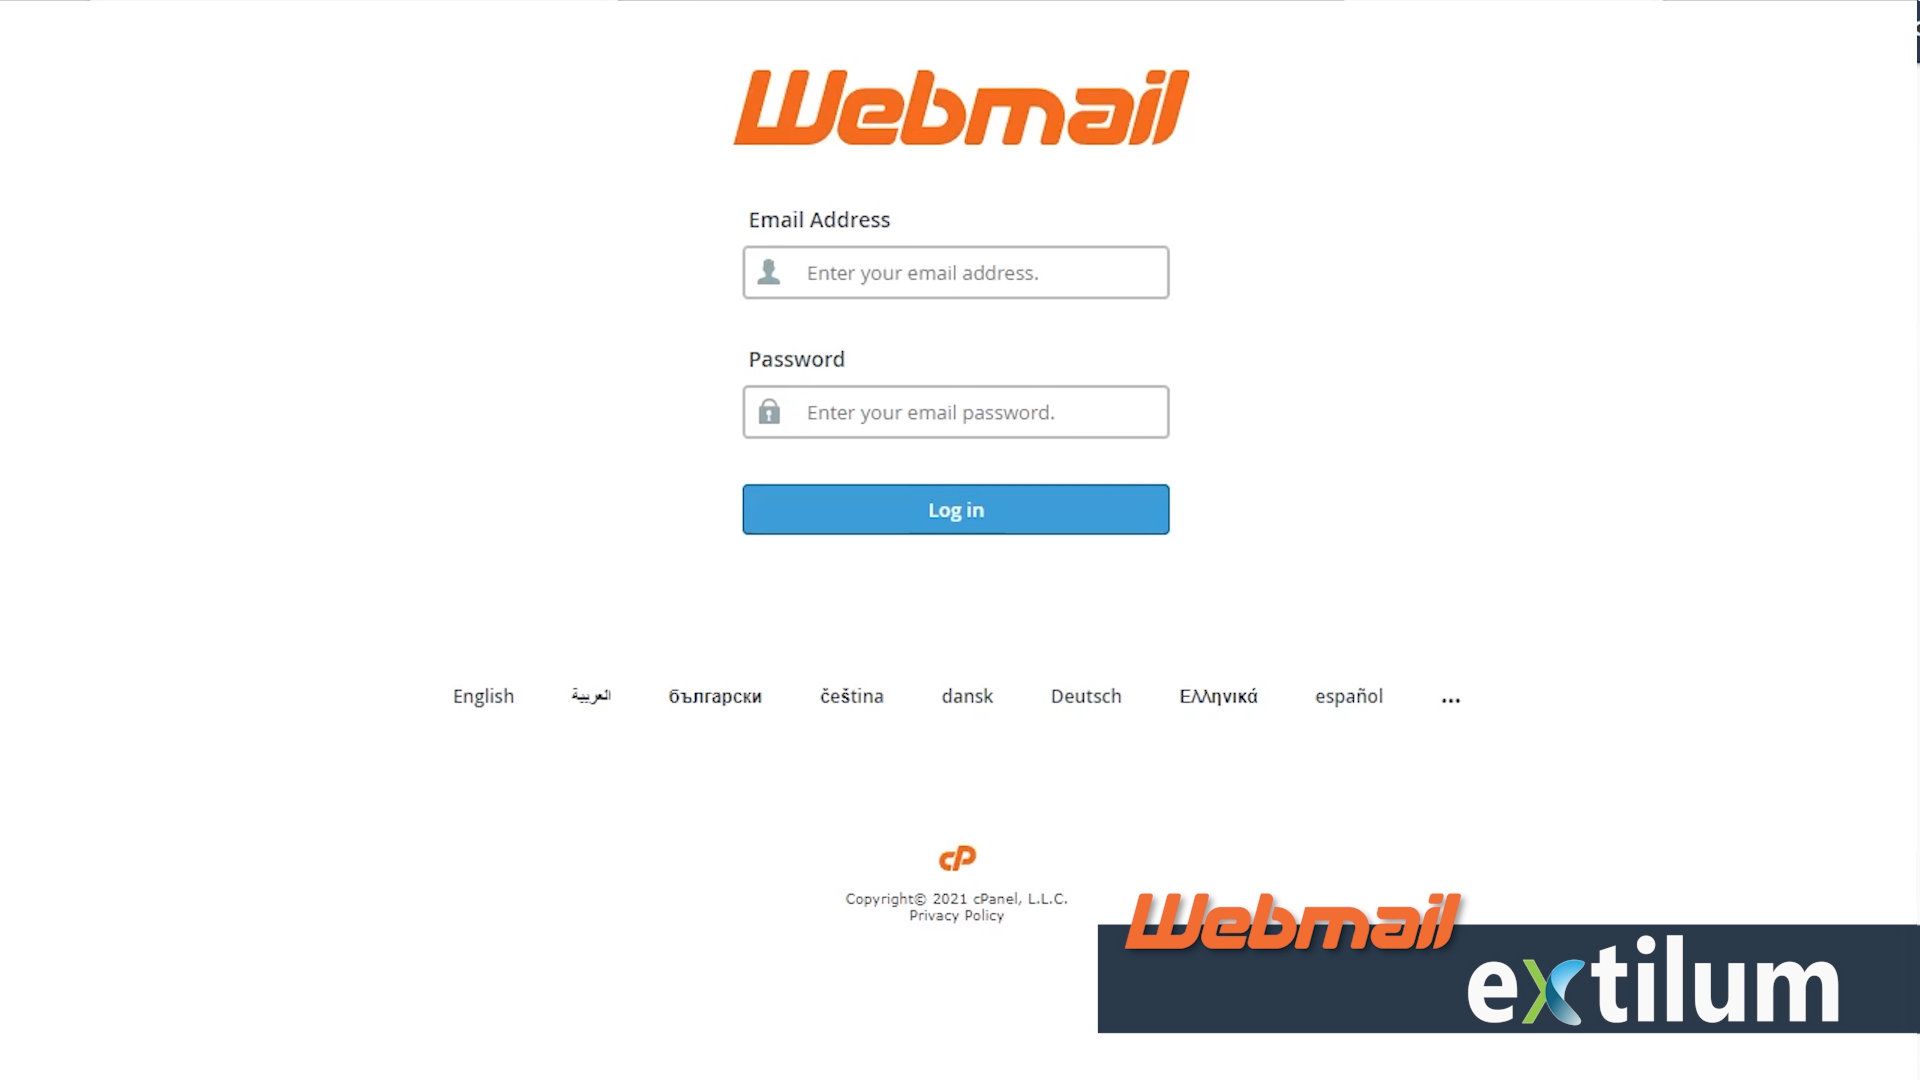 Extilum Webmail - Login from direct link